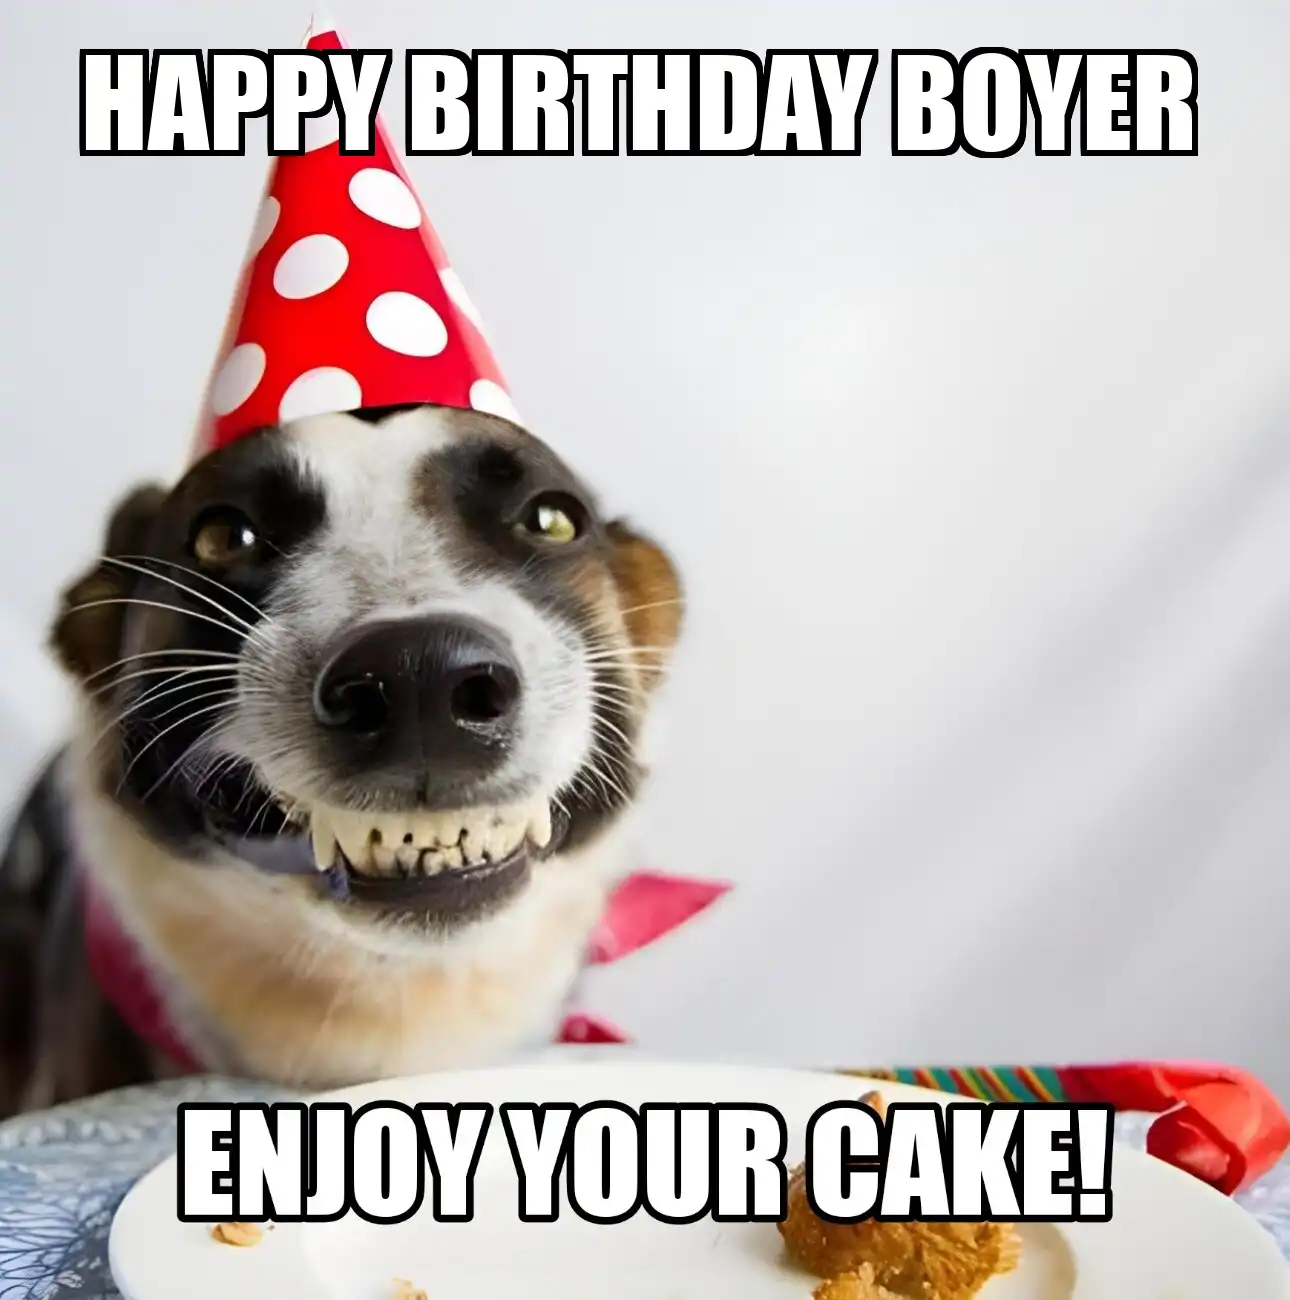 Happy Birthday Boyer Enjoy Your Cake Dog Meme